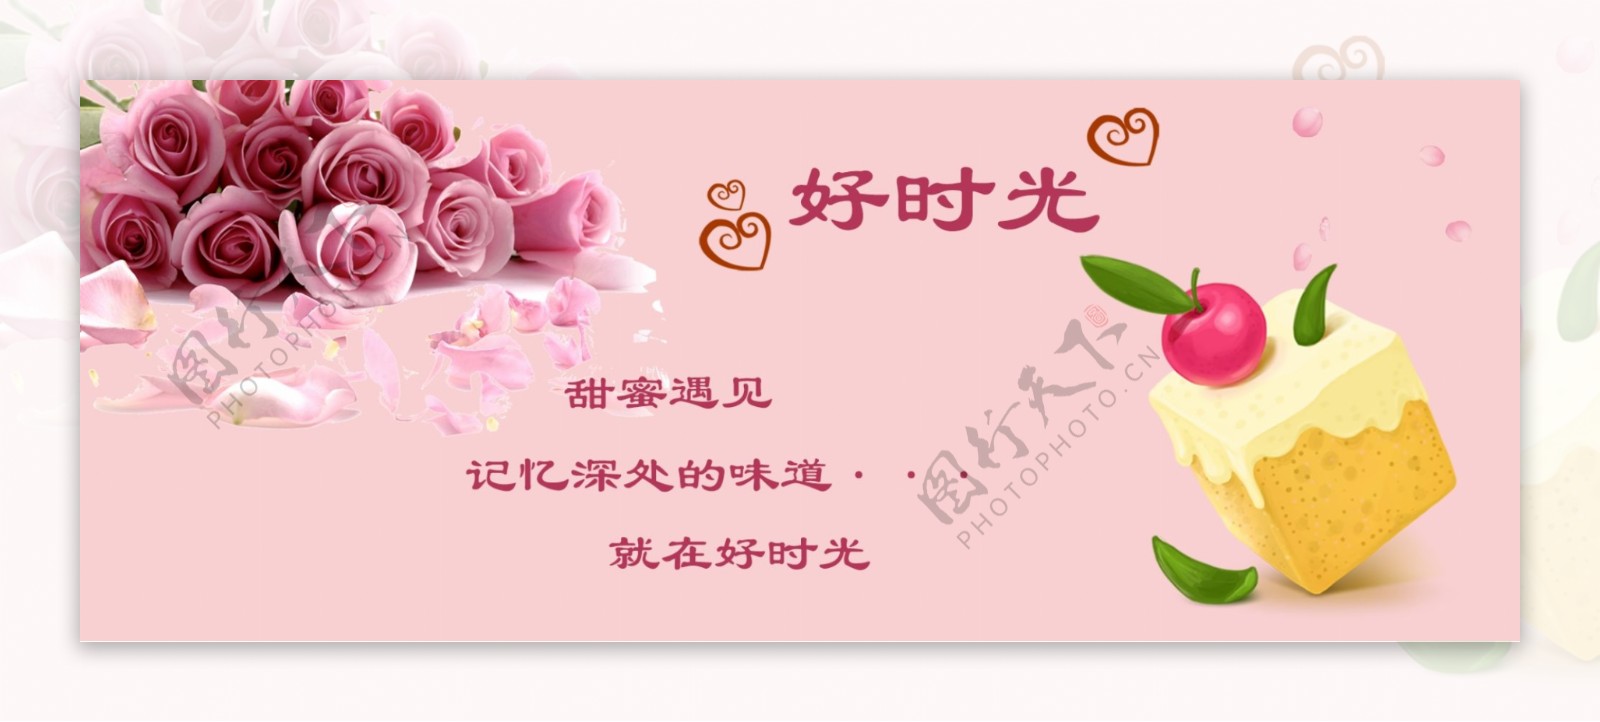 卡通小蛋糕粉红玫瑰宣传海报